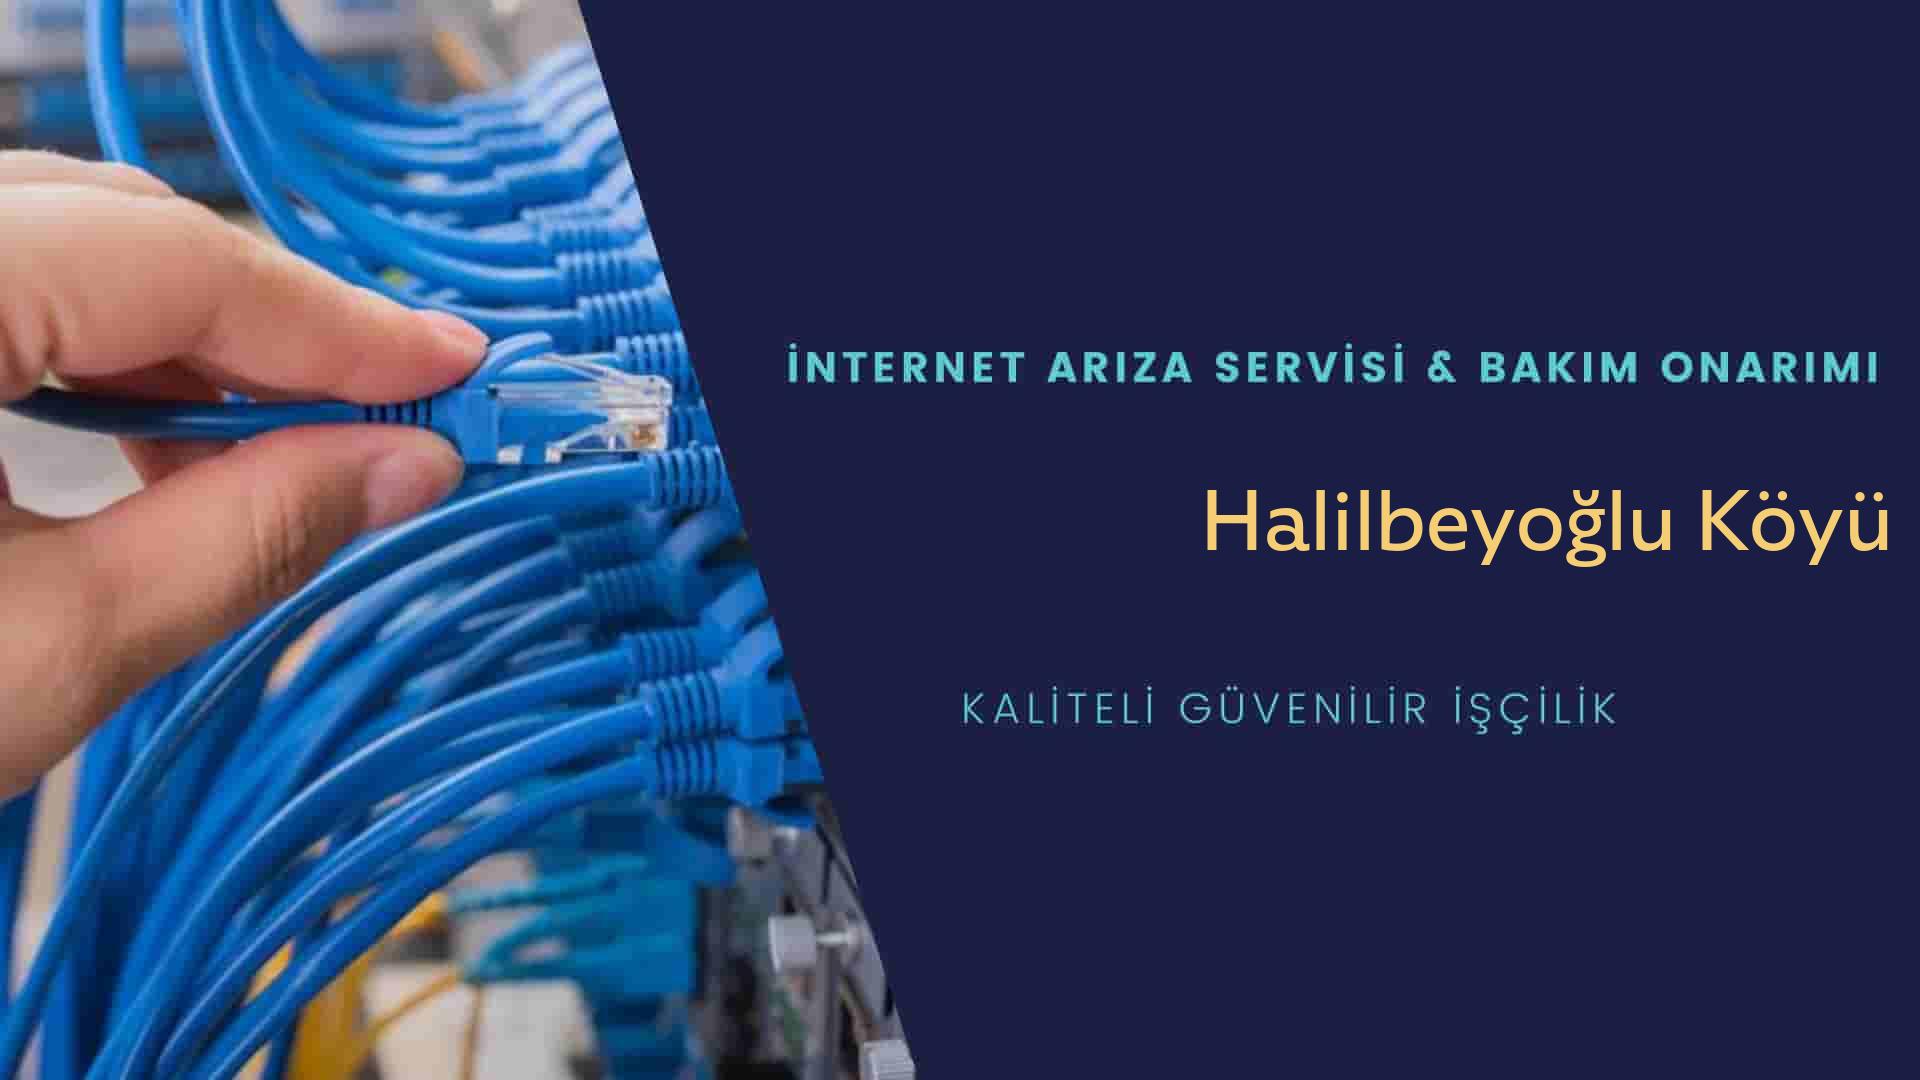 Halilbeyoğlu Köyü internet kablosu çekimi yapan yerler veya elektrikçiler mi? arıyorsunuz doğru yerdesiniz o zaman sizlere 7/24 yardımcı olacak profesyonel ustalarımız bir telefon kadar yakındır size.